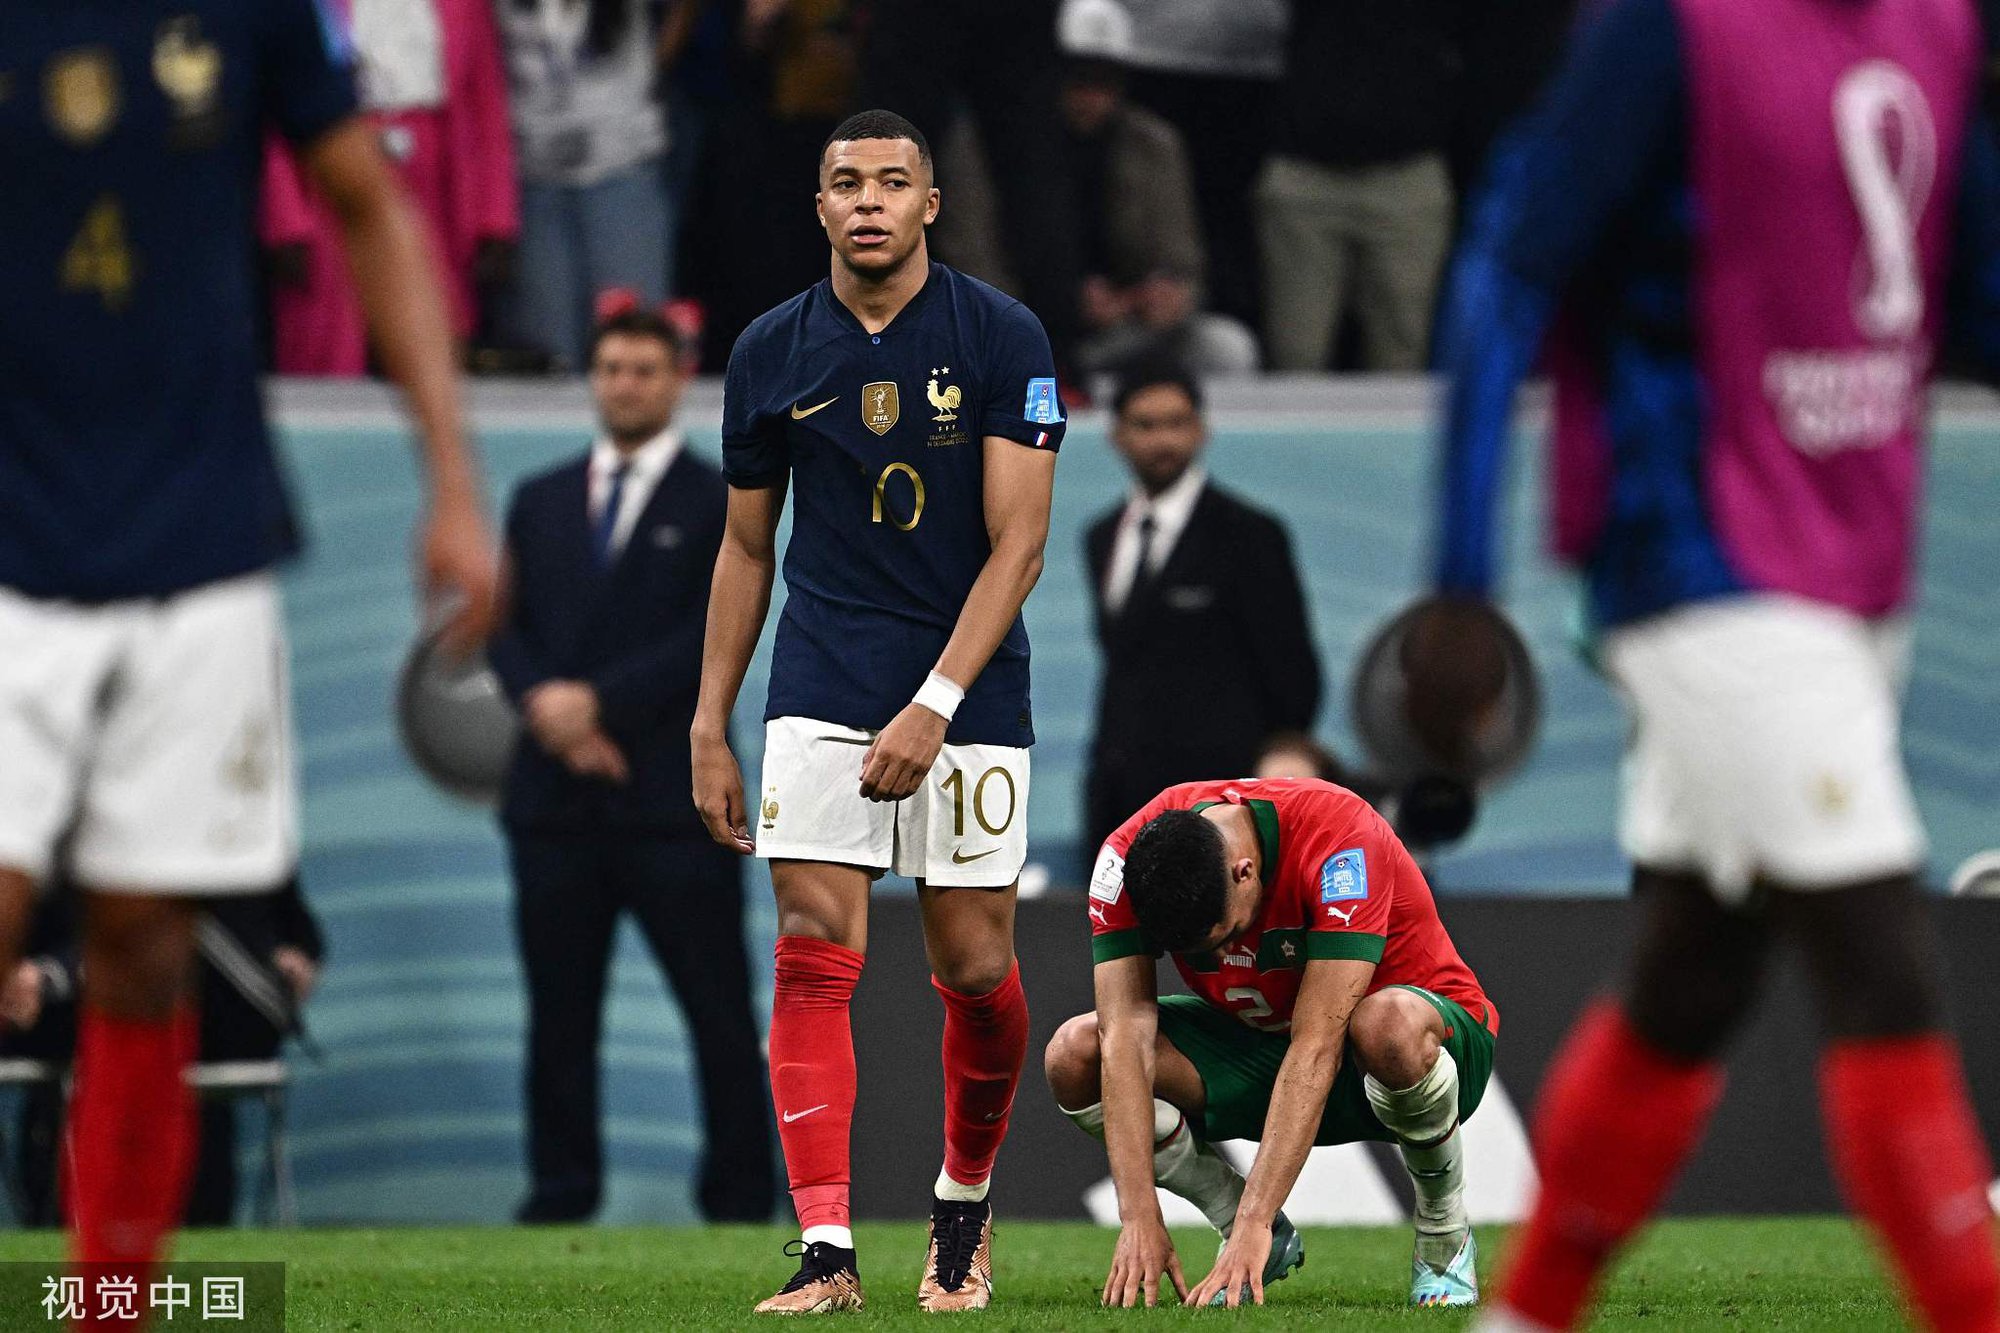 Tuyển Pháp kéo dài kỷ nguyên tại World Cup nhờ sức mạnh tuyệt đối - Ảnh 3.